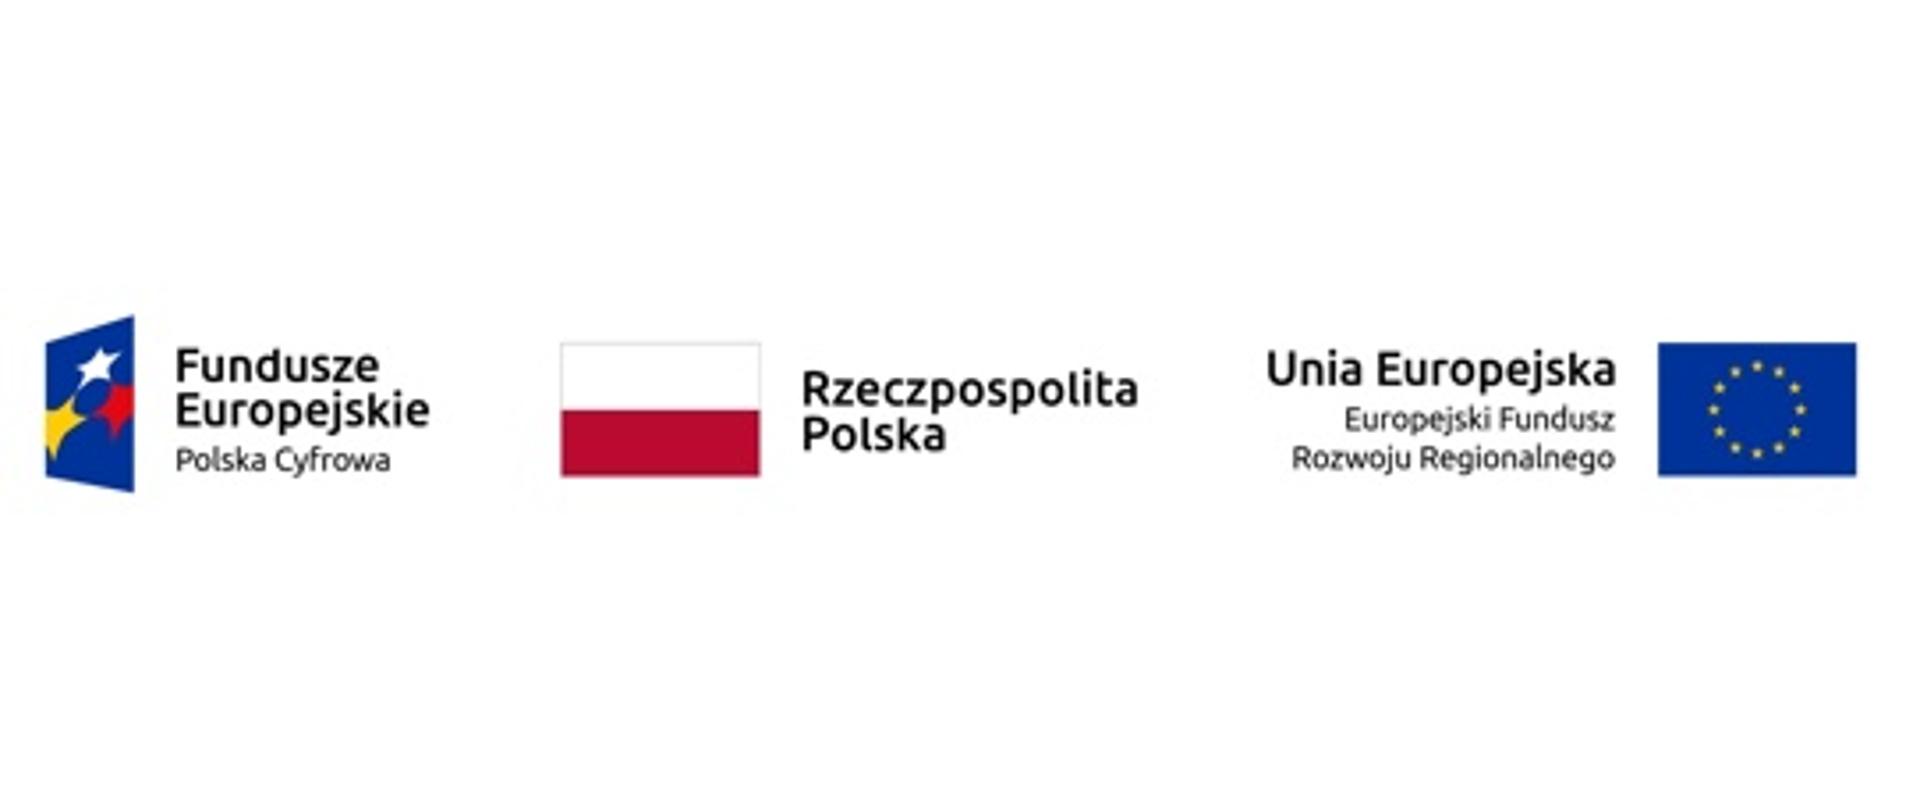 Logotypy: Fundusze Europejskie, Rzeczpospolita Polska, Europejski Fundusz Rozwoju Regionalnego